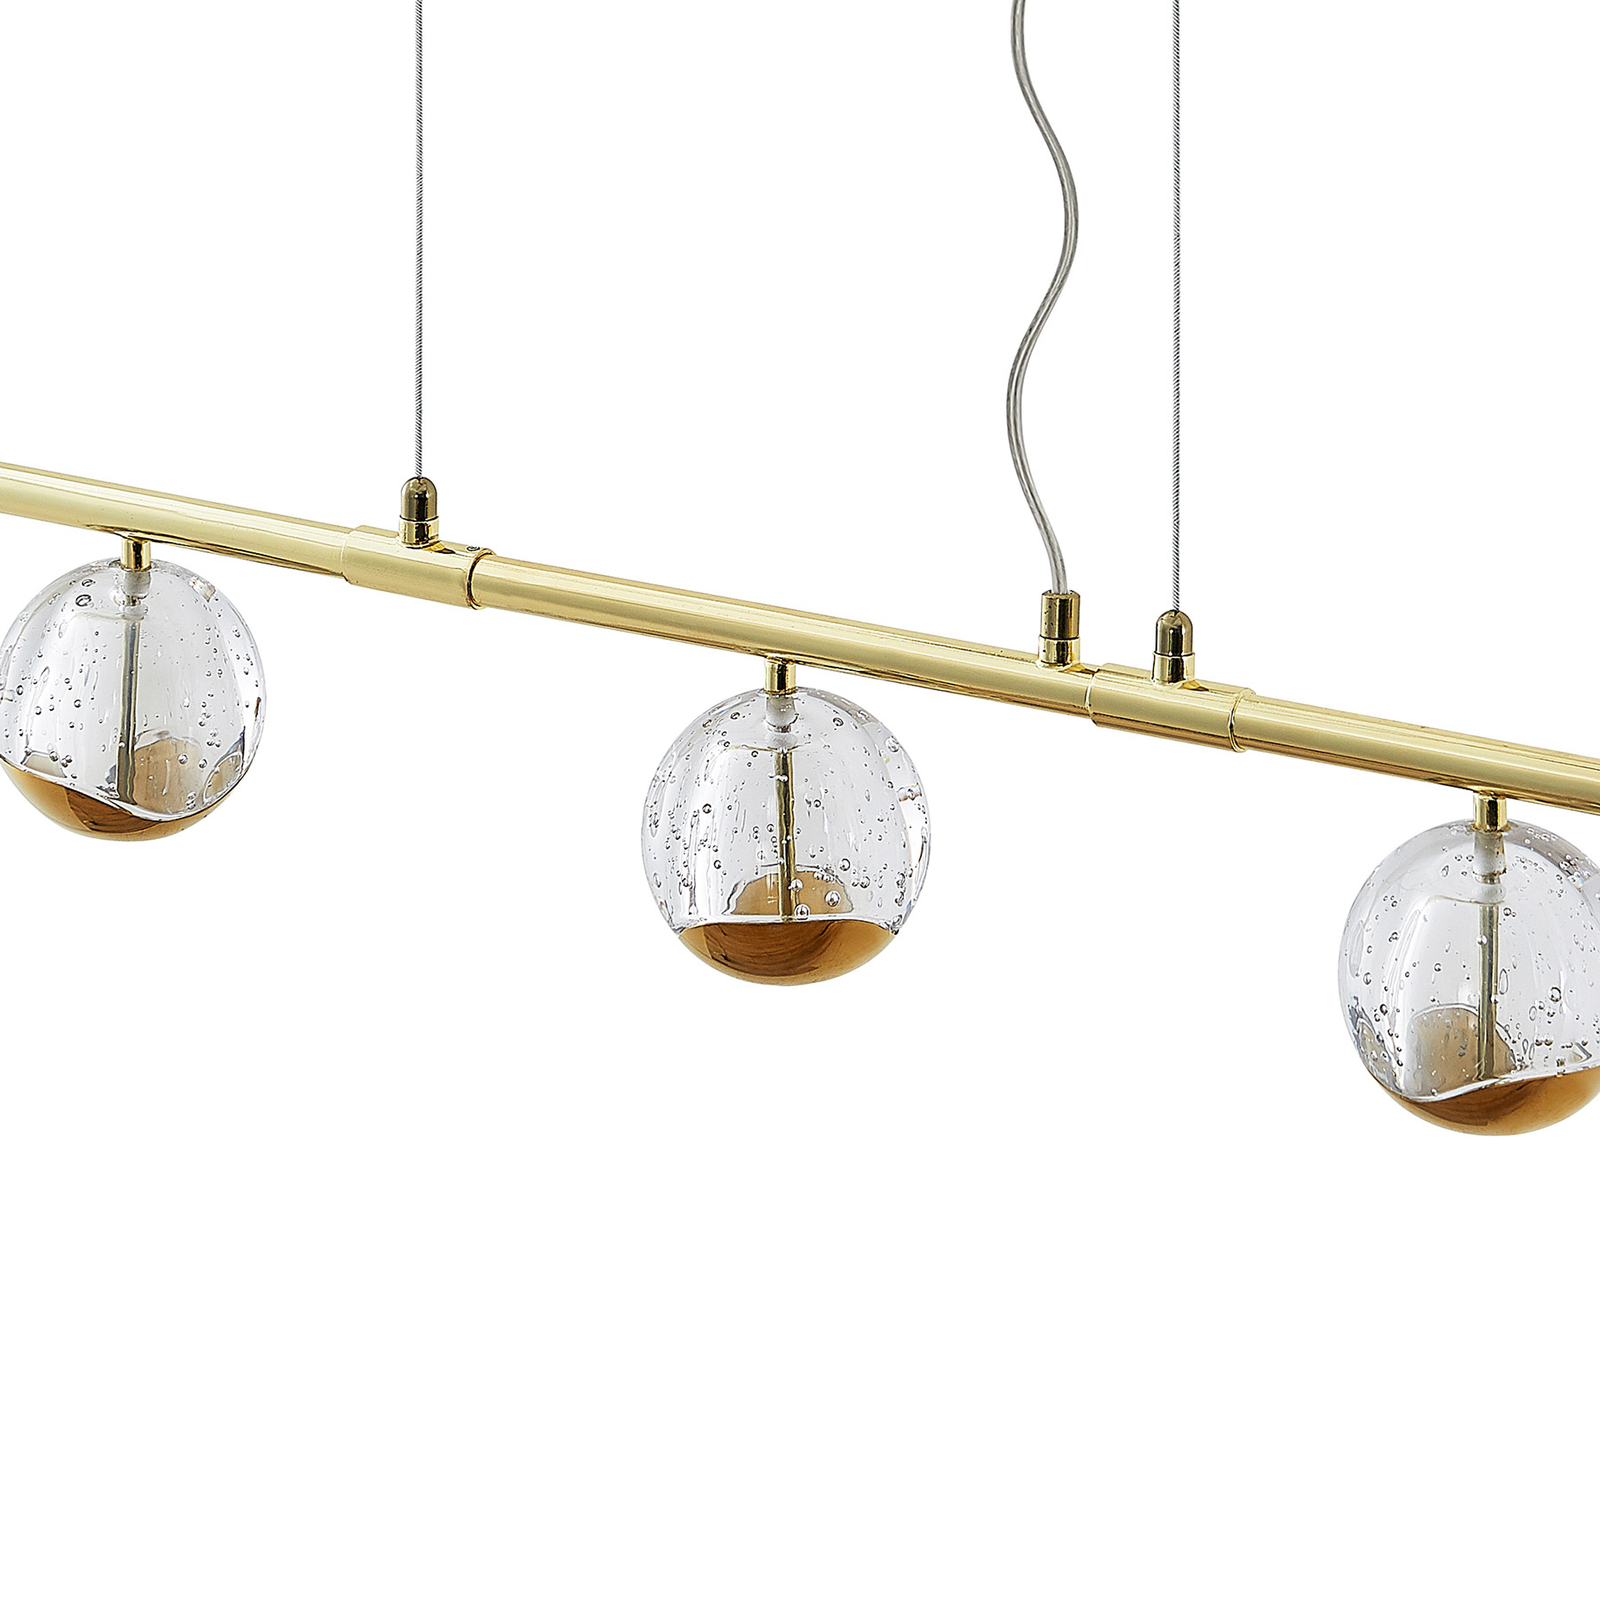 Lucande Kilio LED-hänglampa, 7 lampor, guld